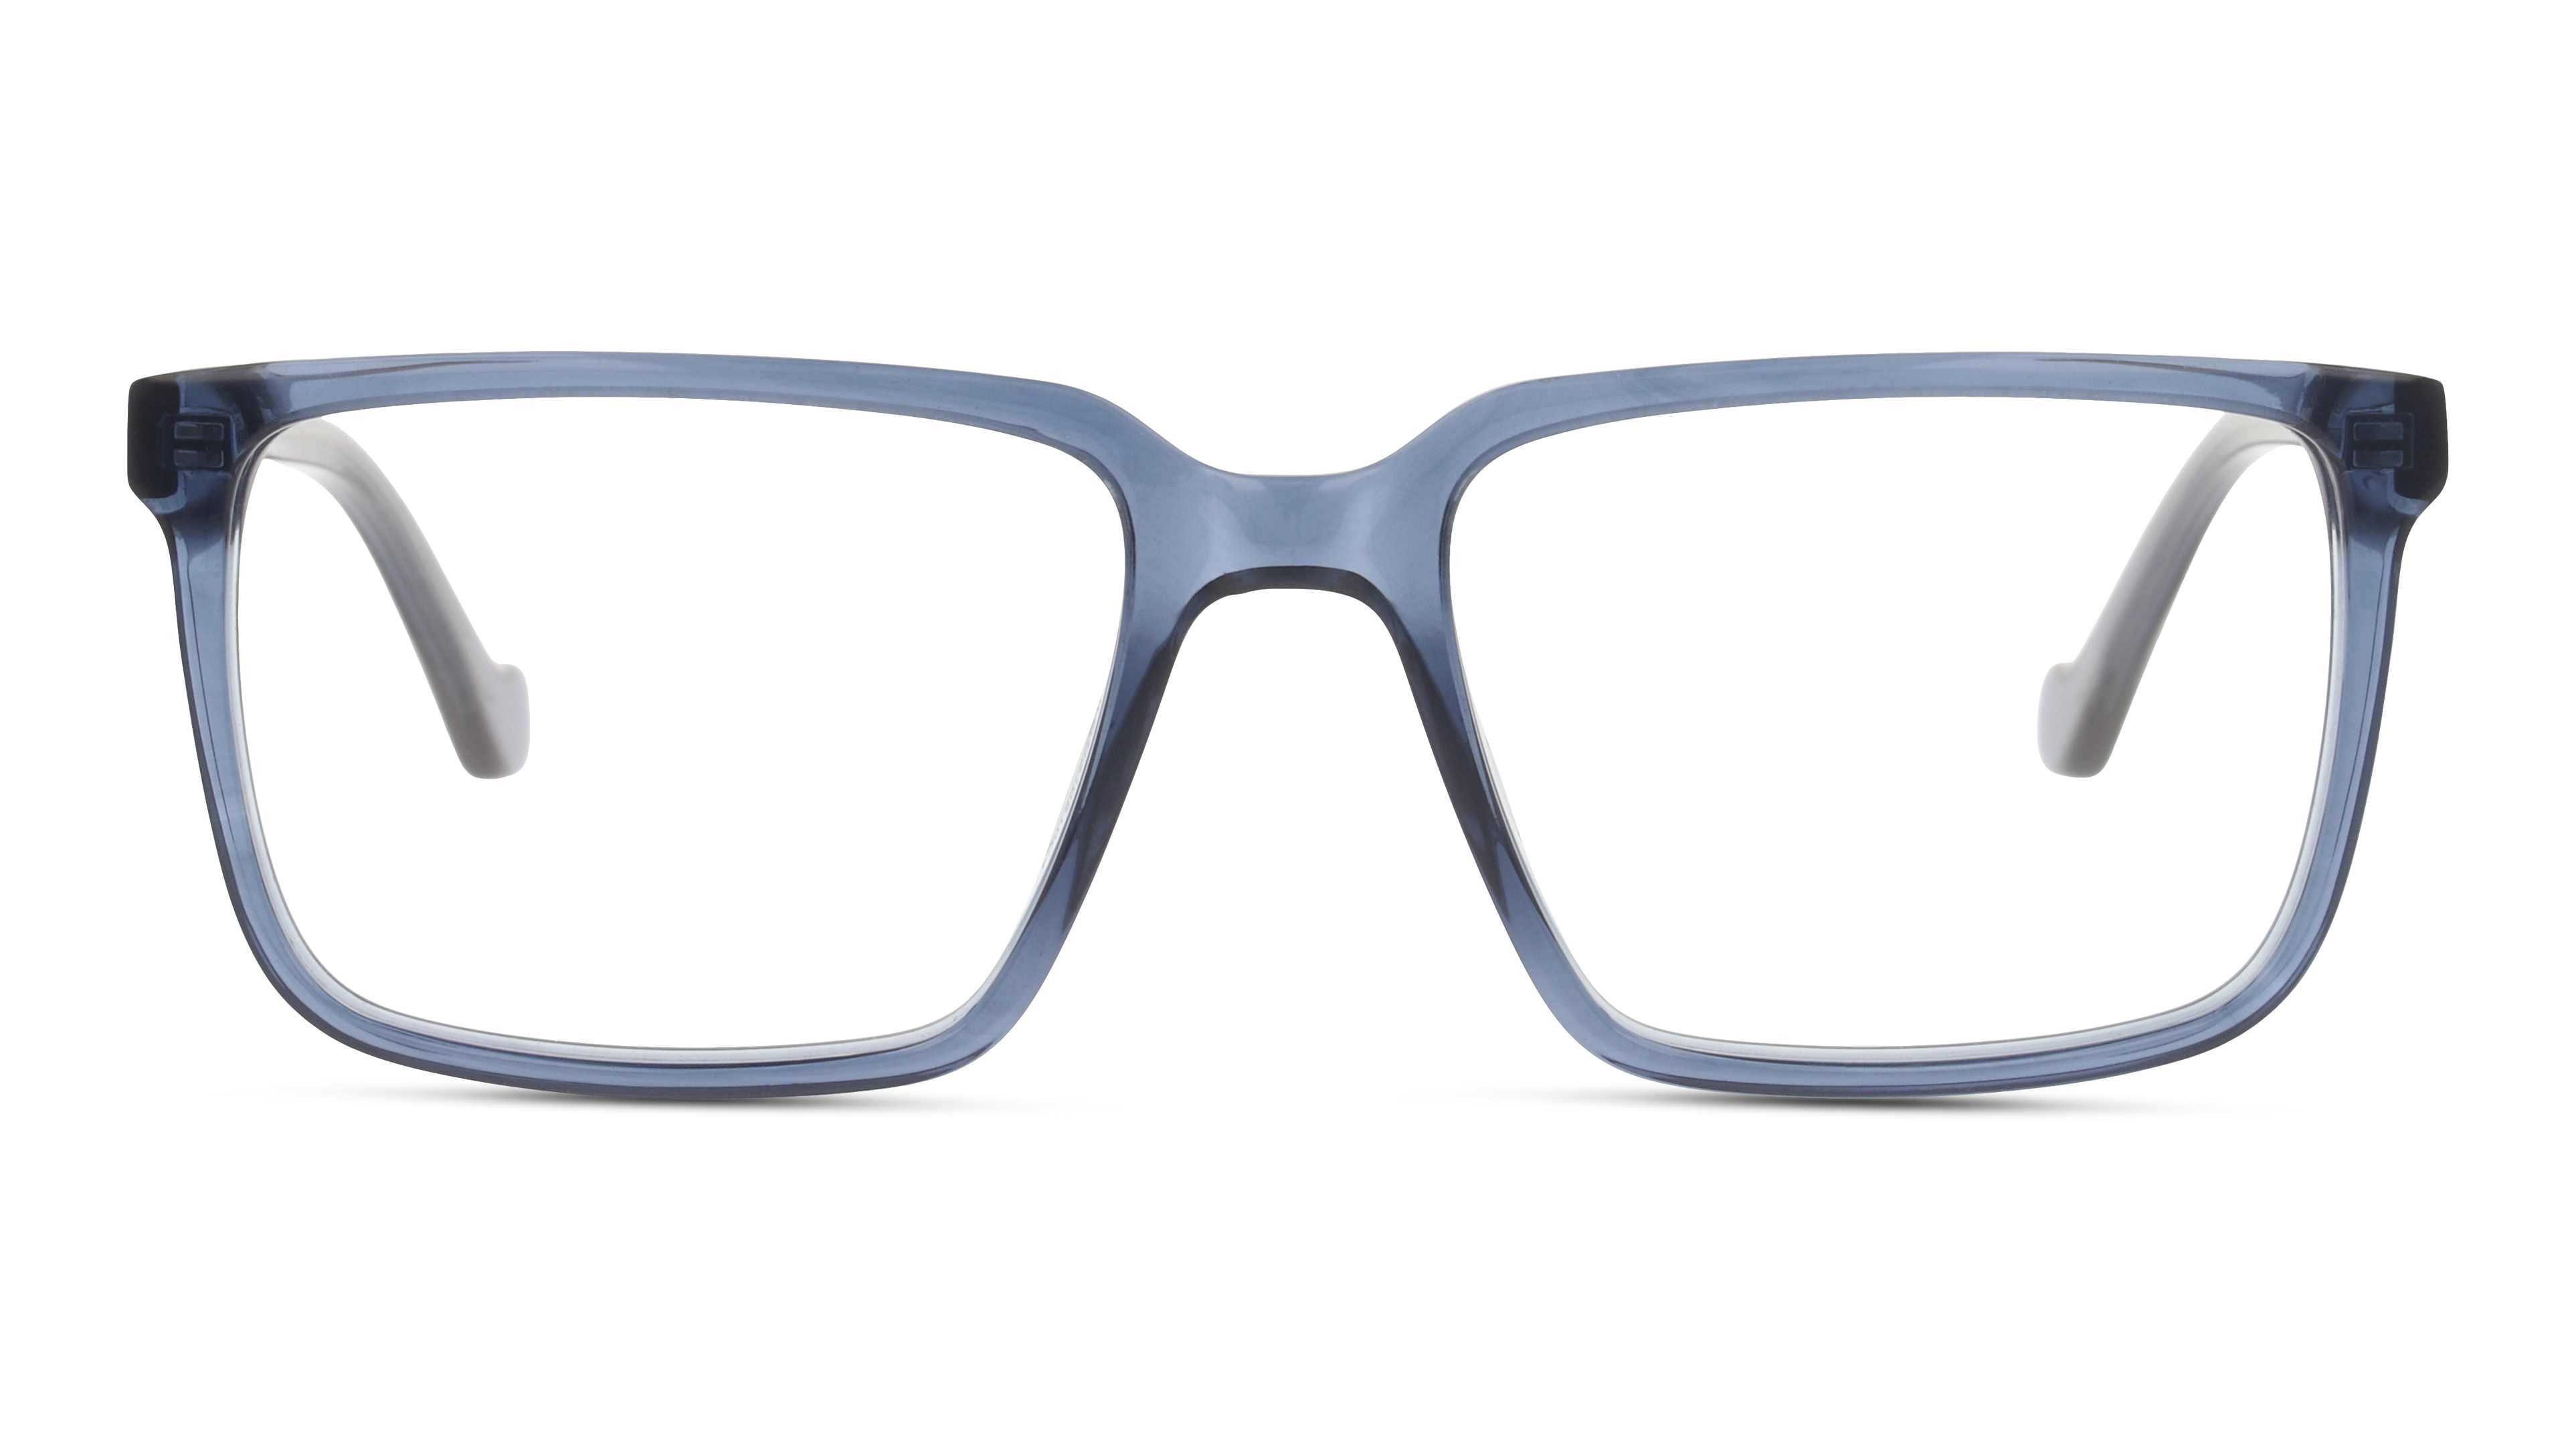 Front Unofficial UNOM0280 Glasses Transparent / Transparent, Blue